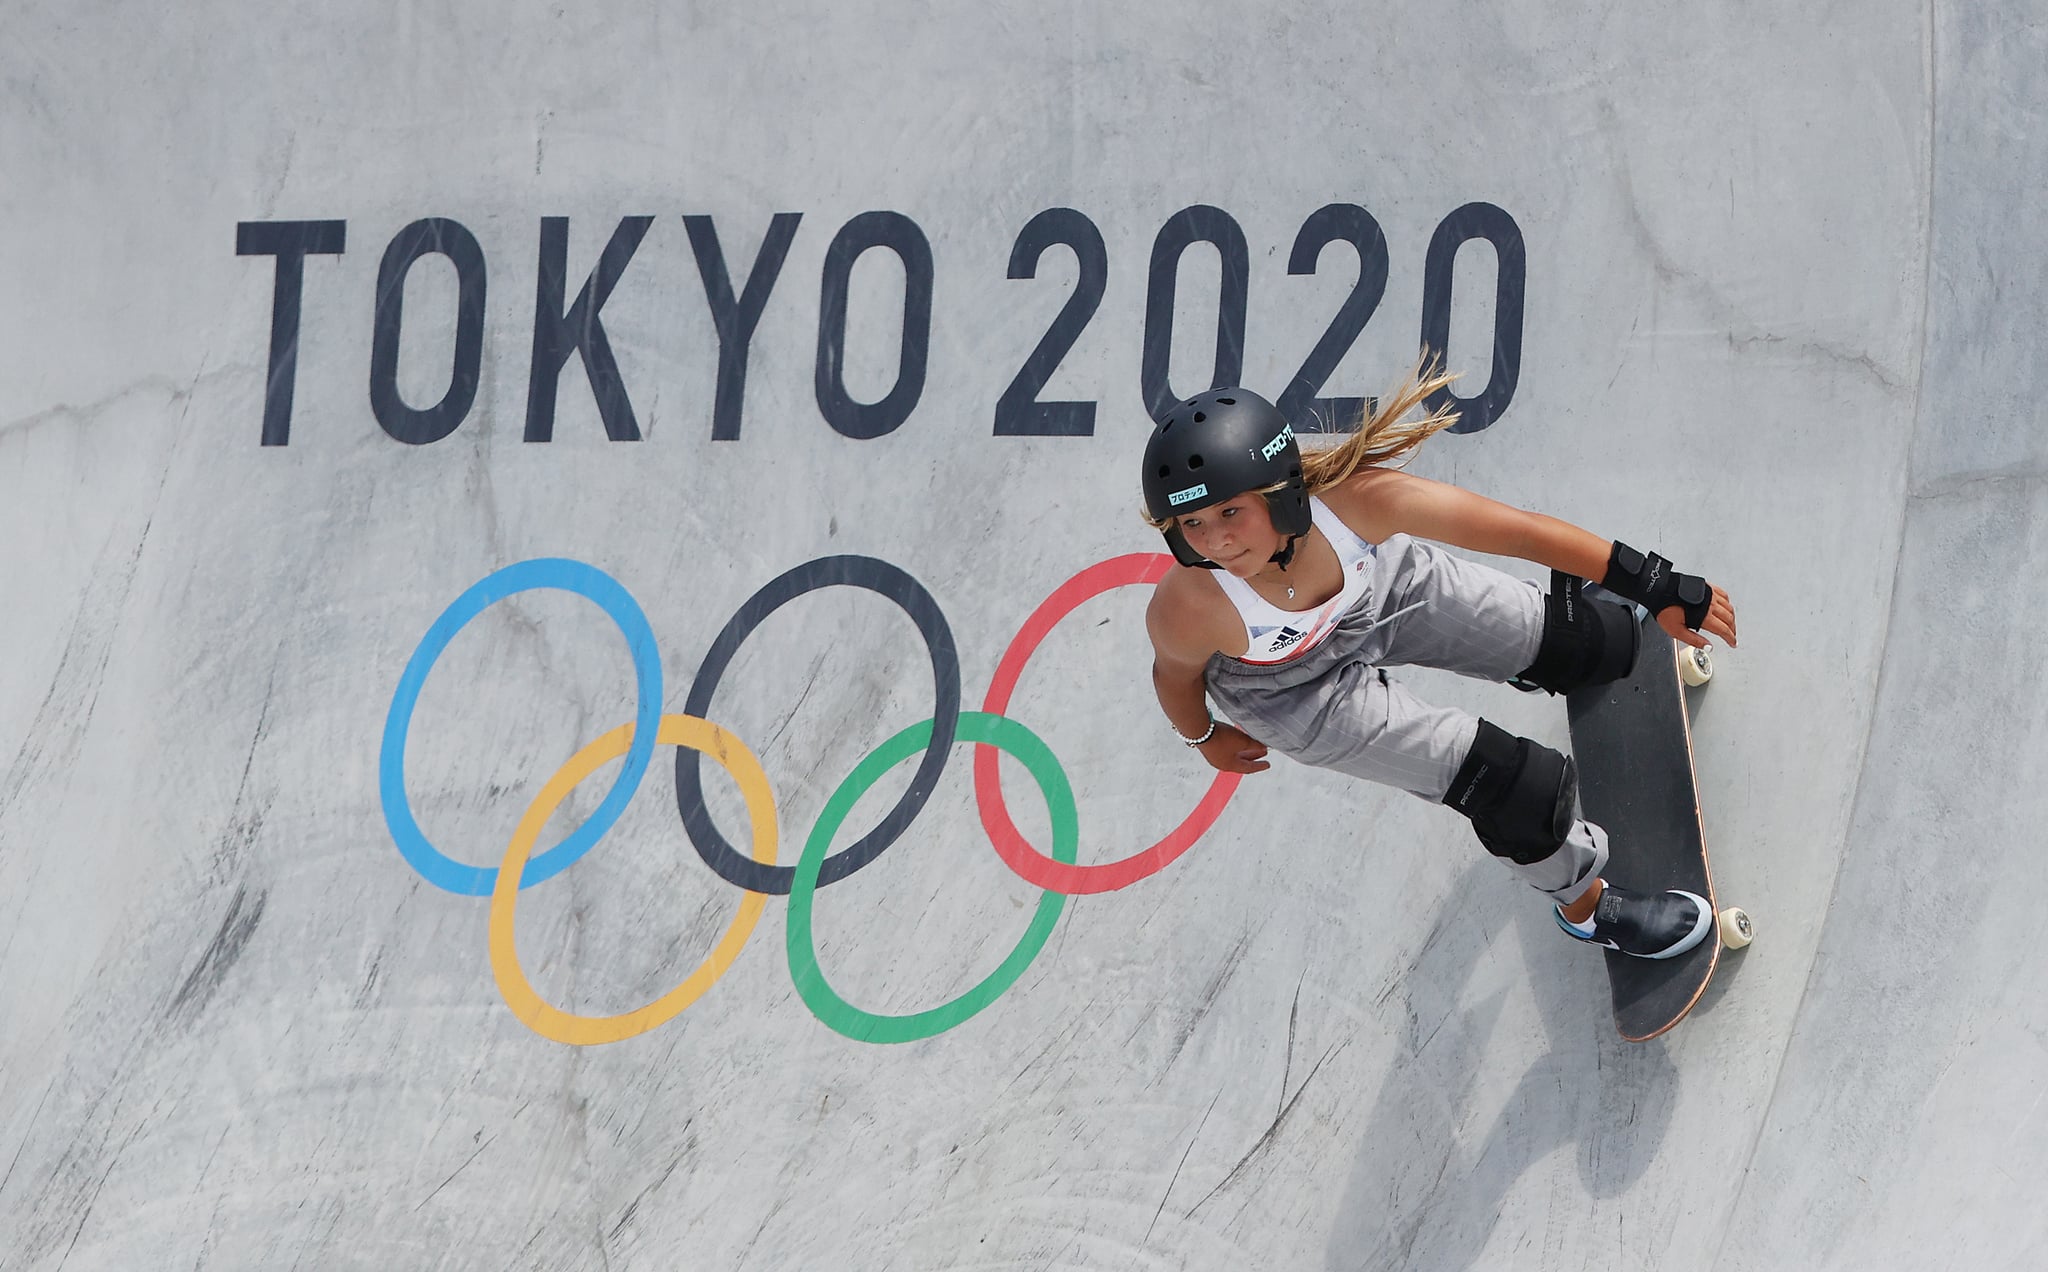 توکیو ، ژاپن - 04 آگوست: اسکای براون تیم بریتانیای کبیر در حین برگزاری مسابقات اسکیت بوردینگ زنان در روز دوازدهم بازی های المپیک توکیو 2020 در پارک ورزشی آریاکه شهری در 4 اوت 2021 در توکیو ژاپن شرکت می کند.